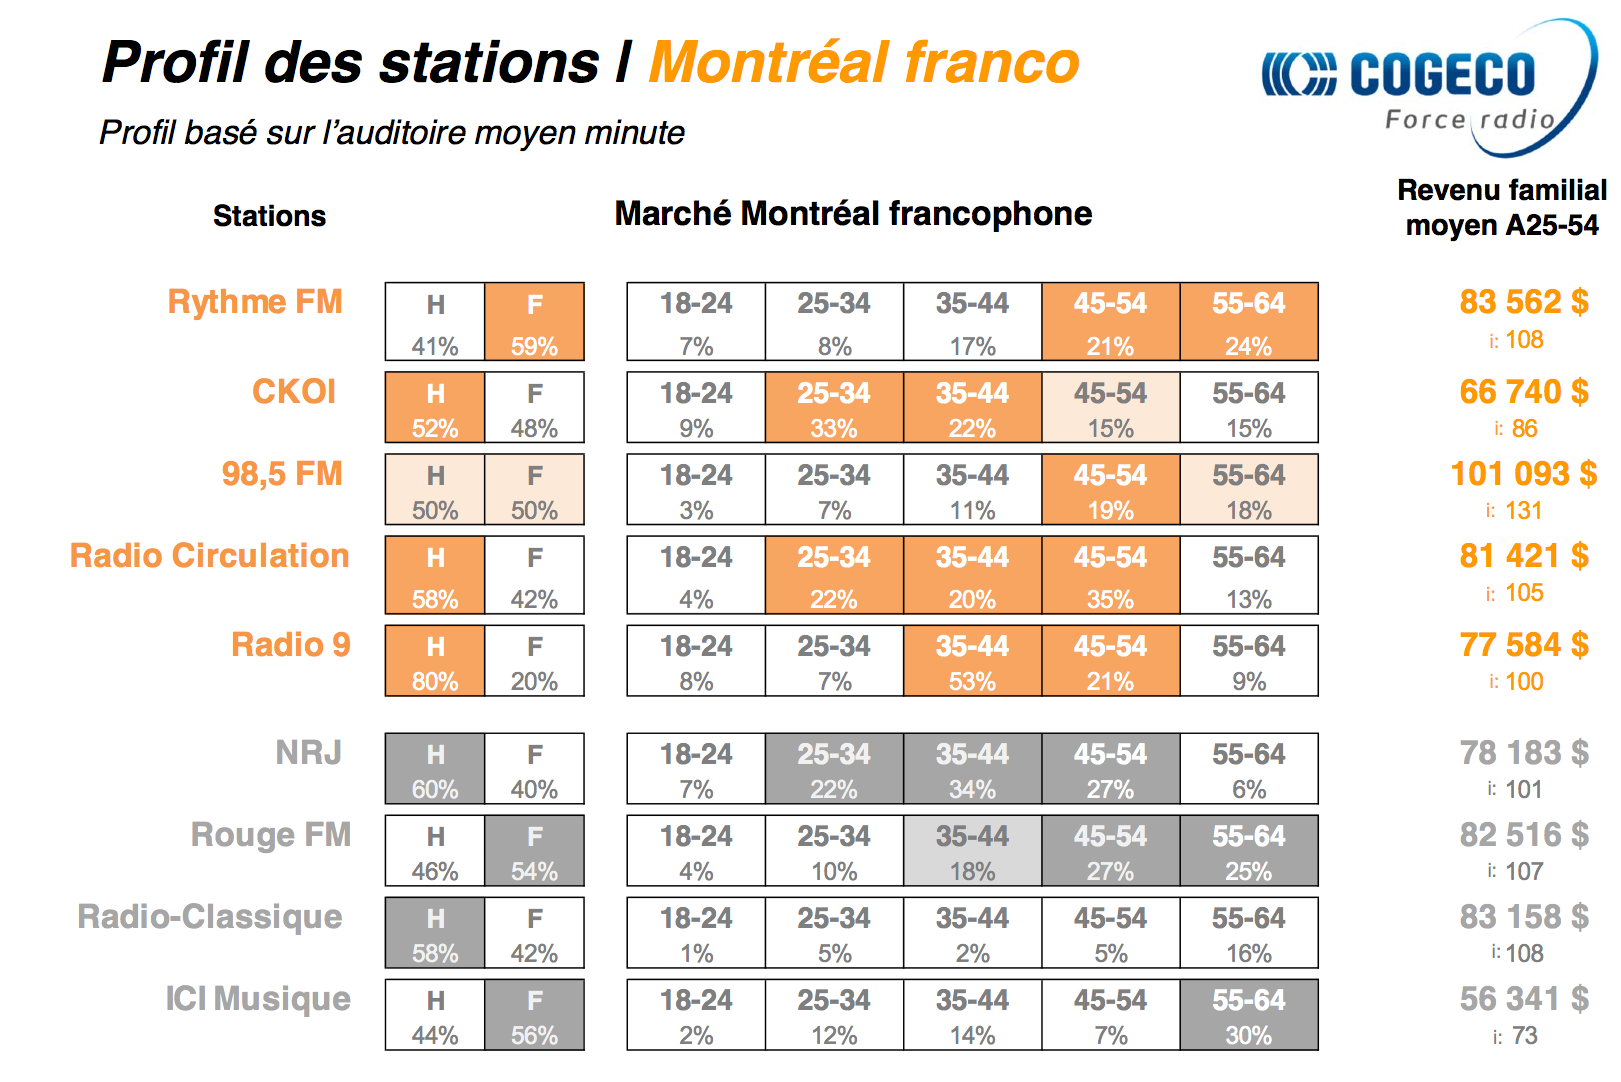 Les radios de Cogeco en force à Montréal